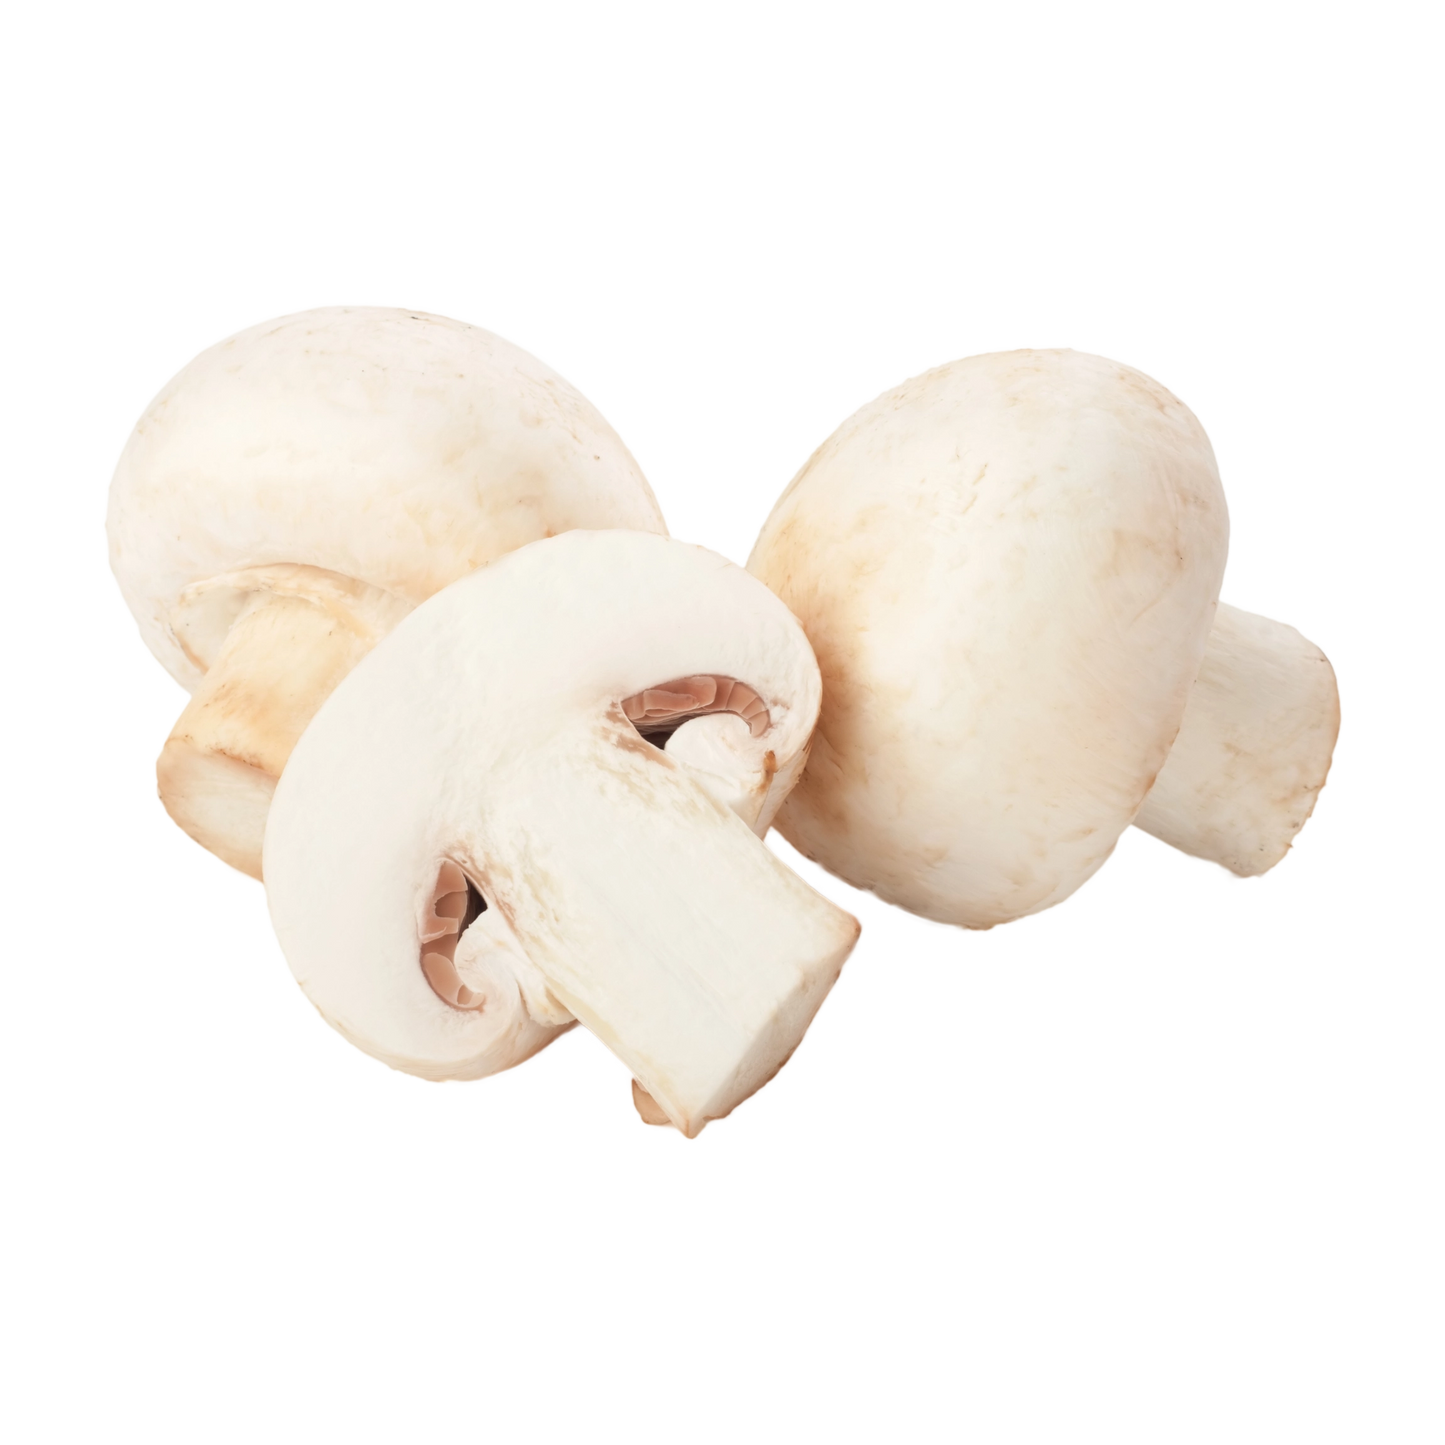 Funghi champignon